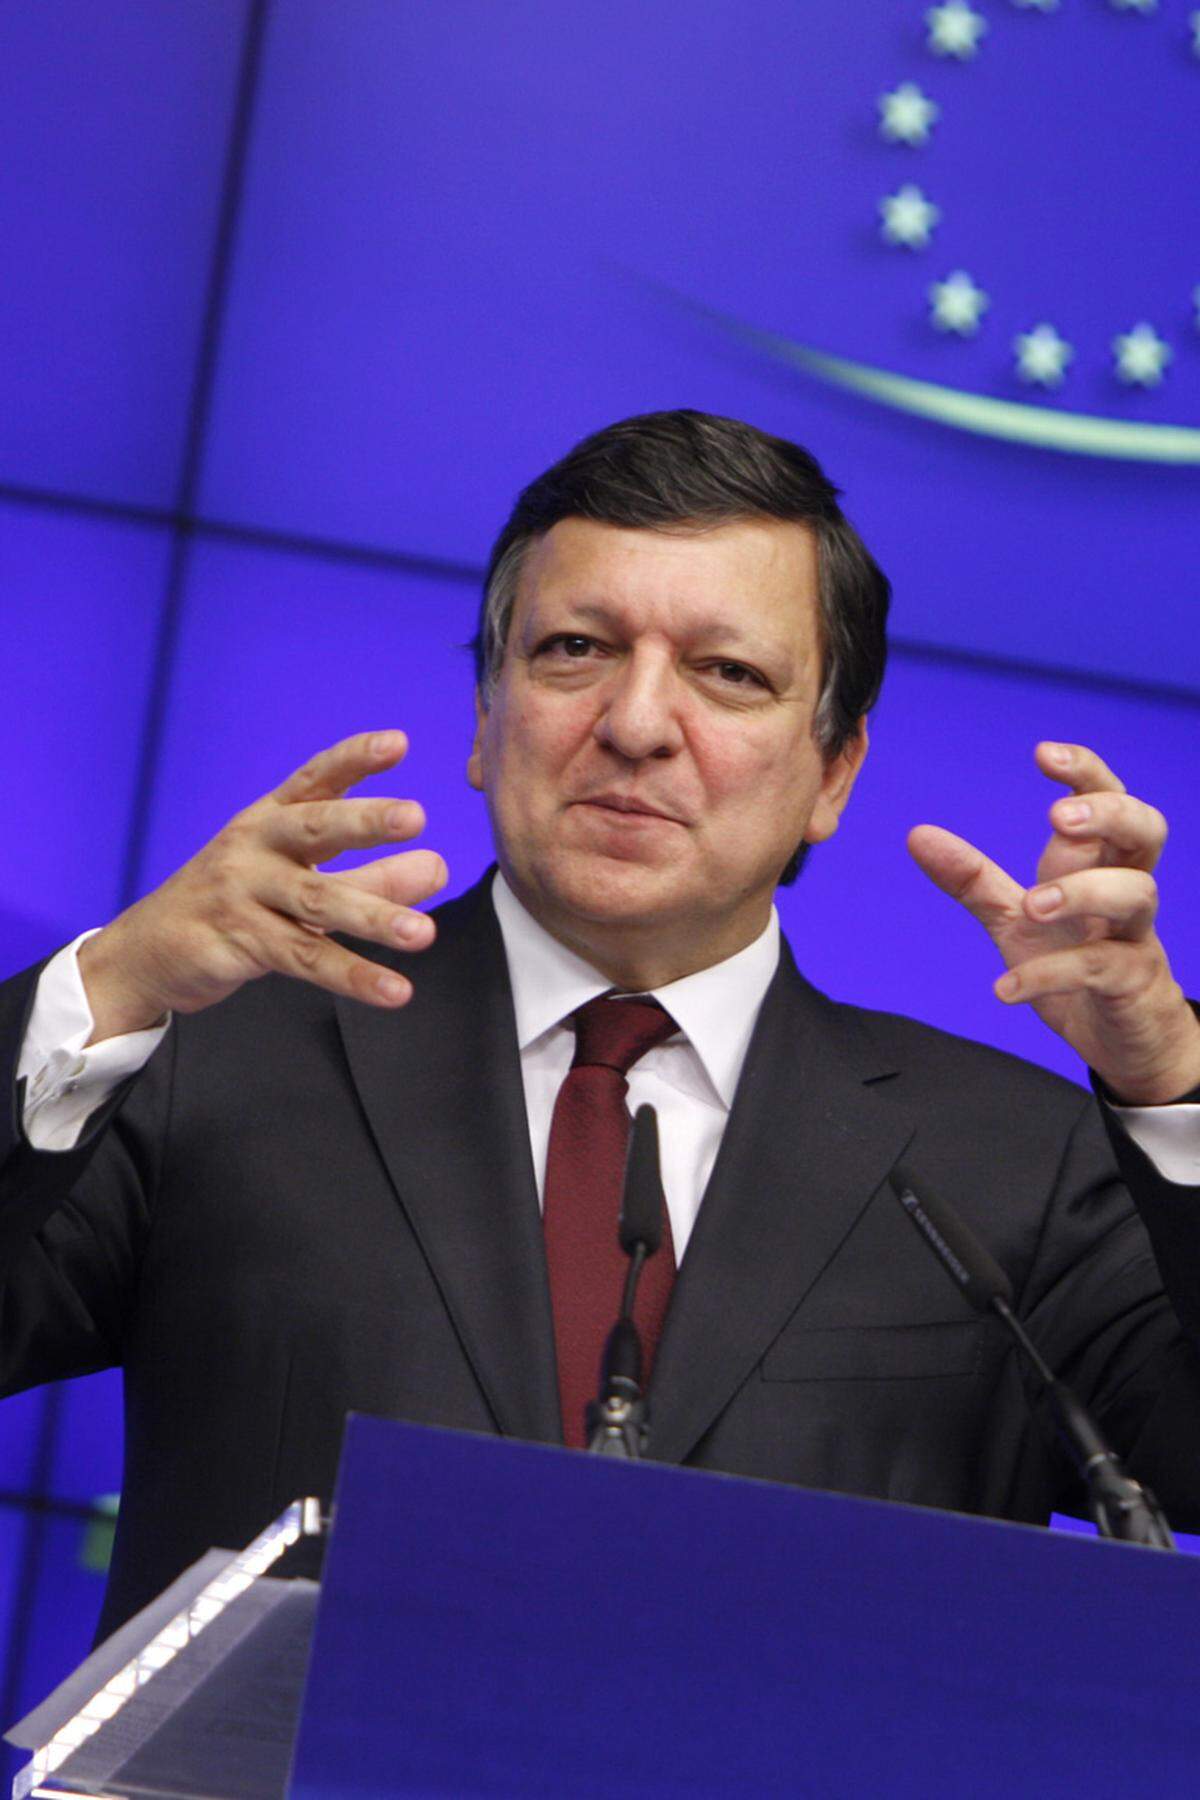 EU-Kommissionspräsident Jose Manuel Barroso würdigt Habsburg als "einen großen Europäer, der dem europäischen Einigungswerk Zeit seines reichen Lebens wichtige Impulse verliehen hat". "Sein klares Eintreten gegen jede Form des Totalitarismus und für Europas Grundwerte wird mir besonders in Erinnerung bleiben. Gerade in schwierigen Zeiten sollte Otto von Habsburgs Einsatz für Europa uns allen politisches Vorbild sein."